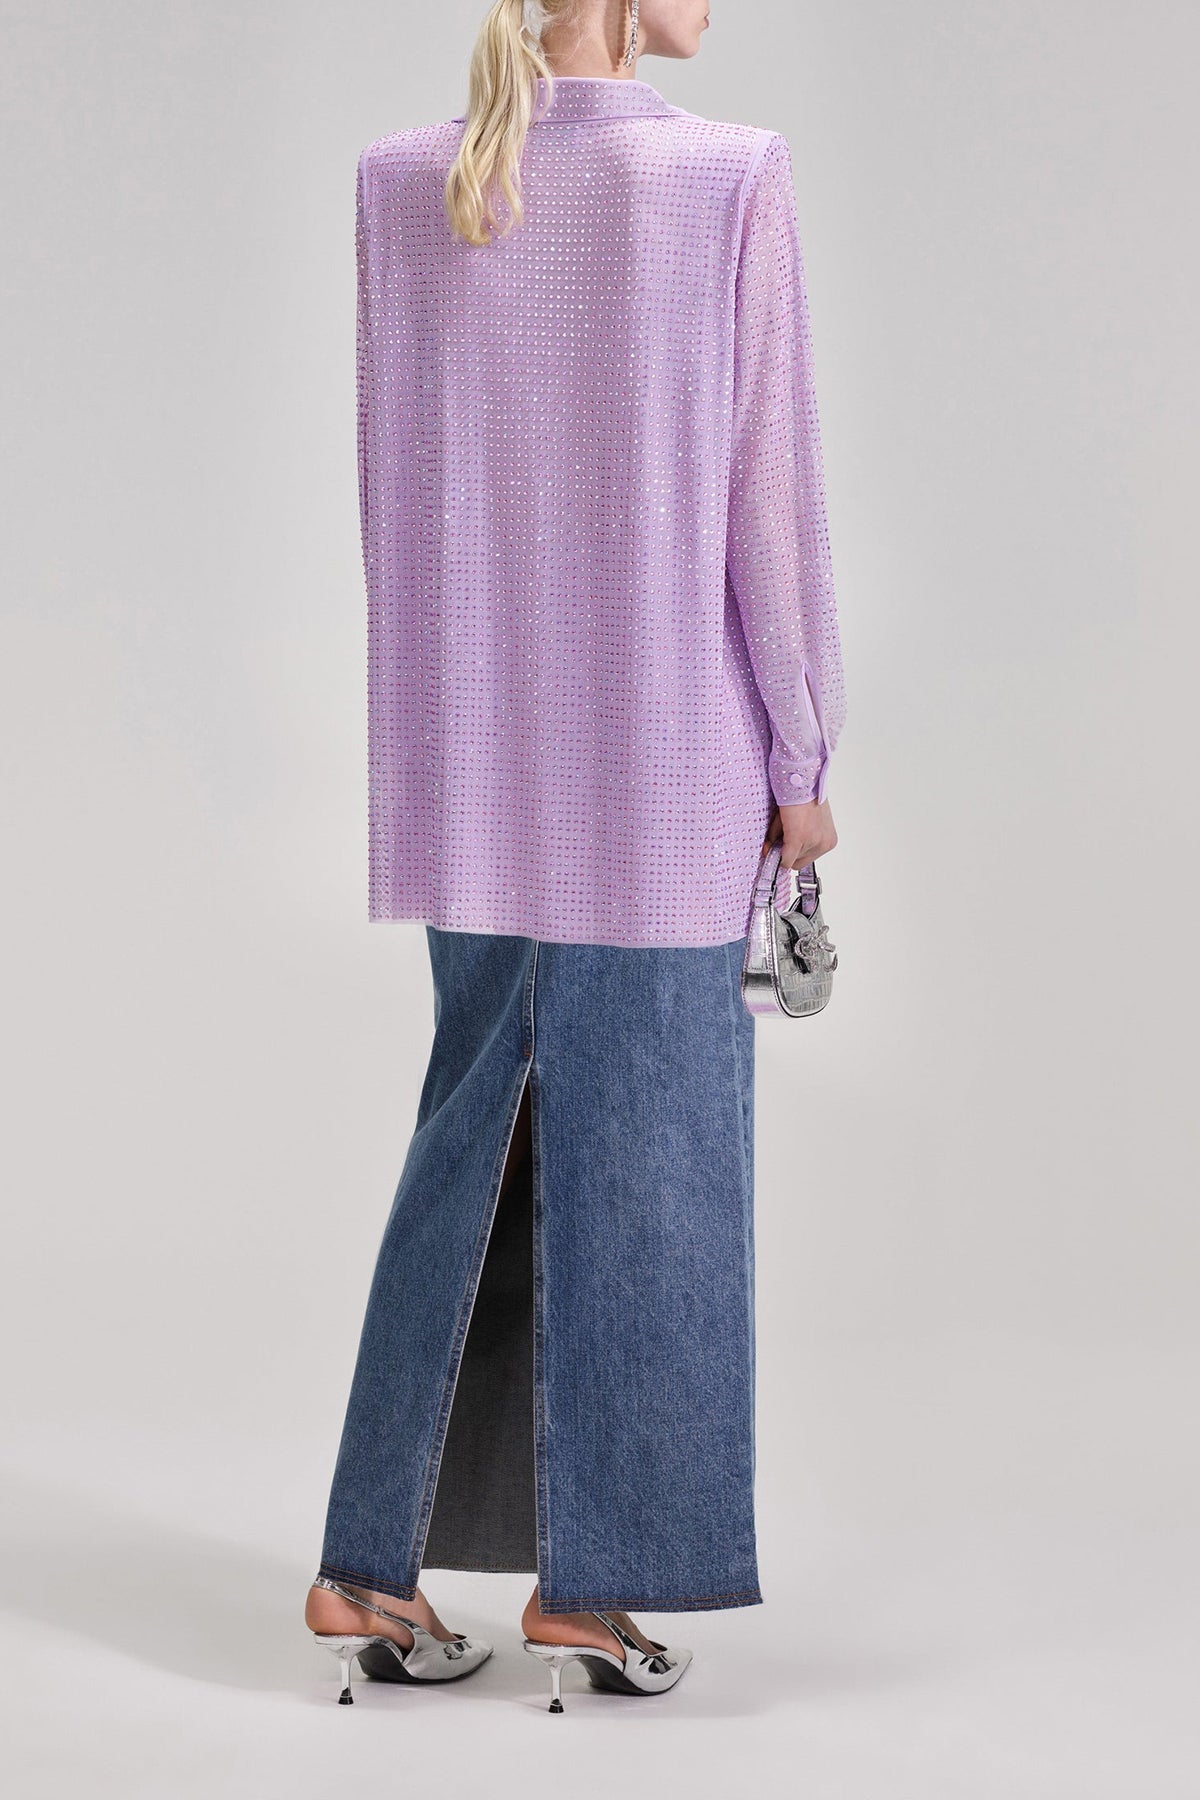 Lilac Rhinestone Mesh Shirt - shop-olivia.com